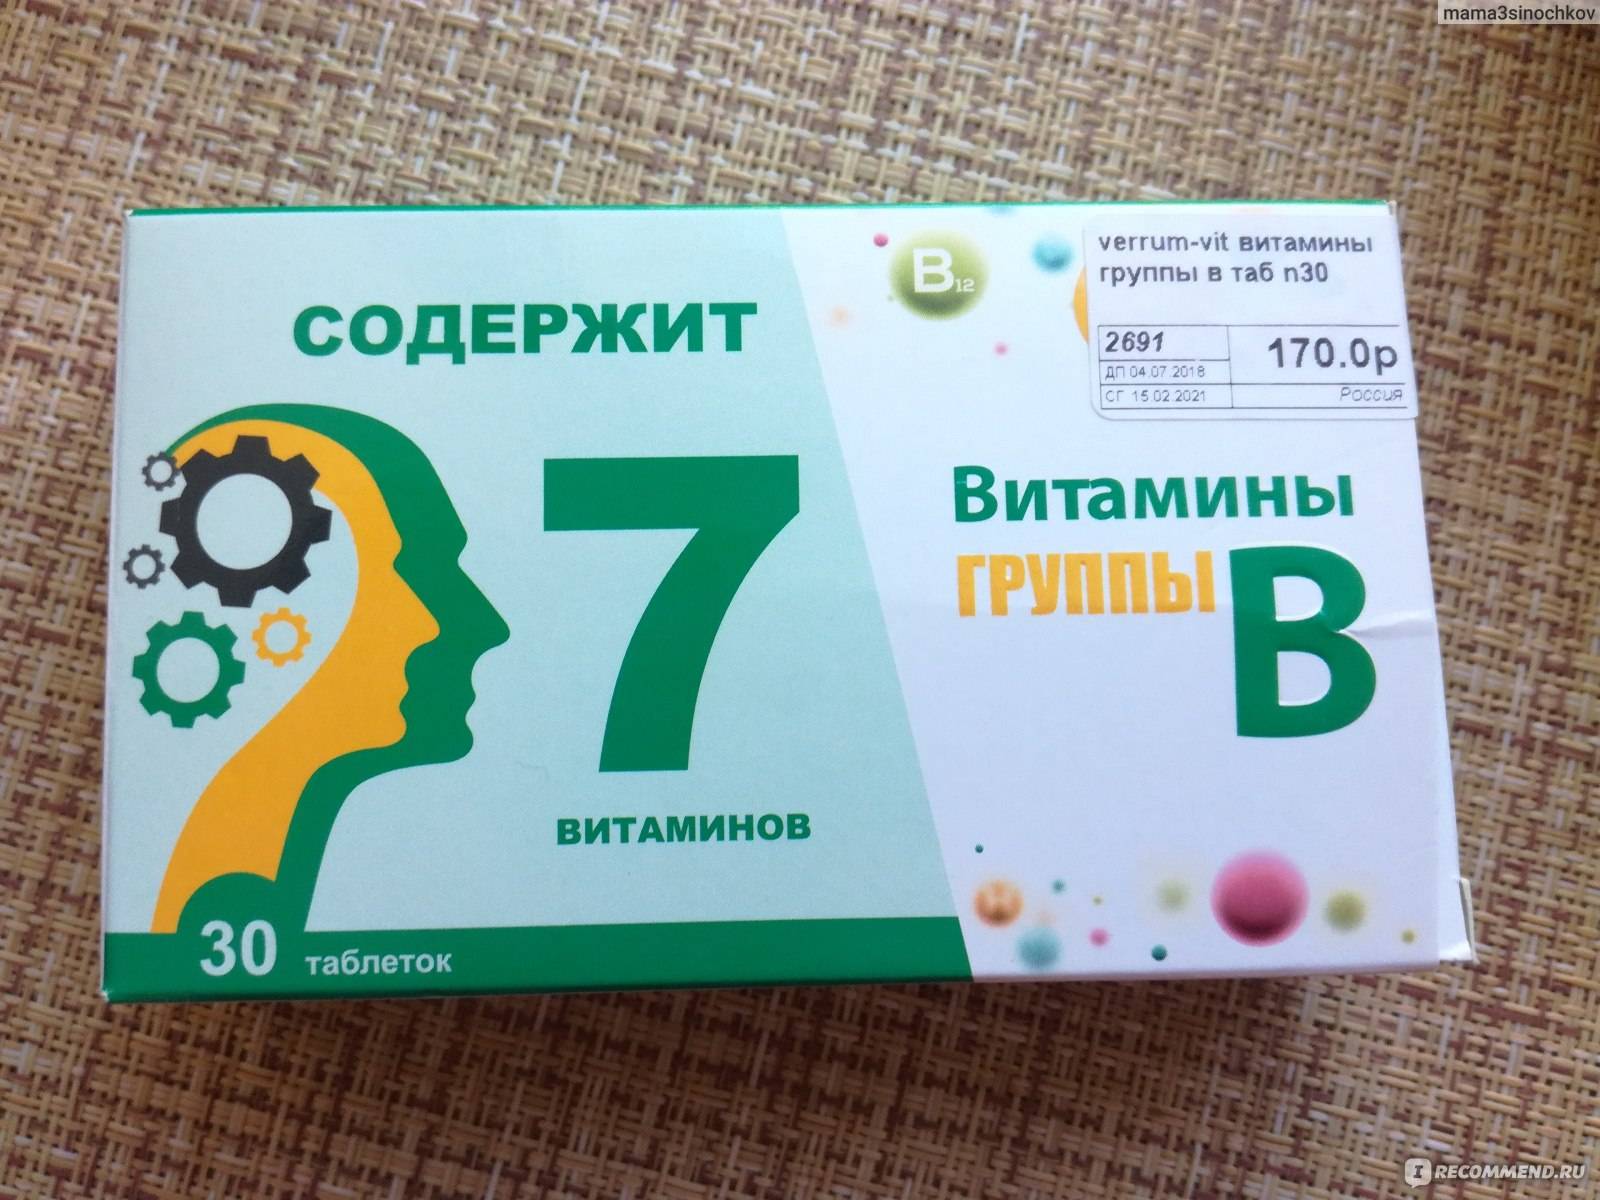 Витамин б отзывы таблетки. Витаминный комплекс в12 в6. Комплекс витаминов в2 в6 в12. Витаминный комплекс в6 в9 в12. Витамины б1 б6 б12 в таблетках.